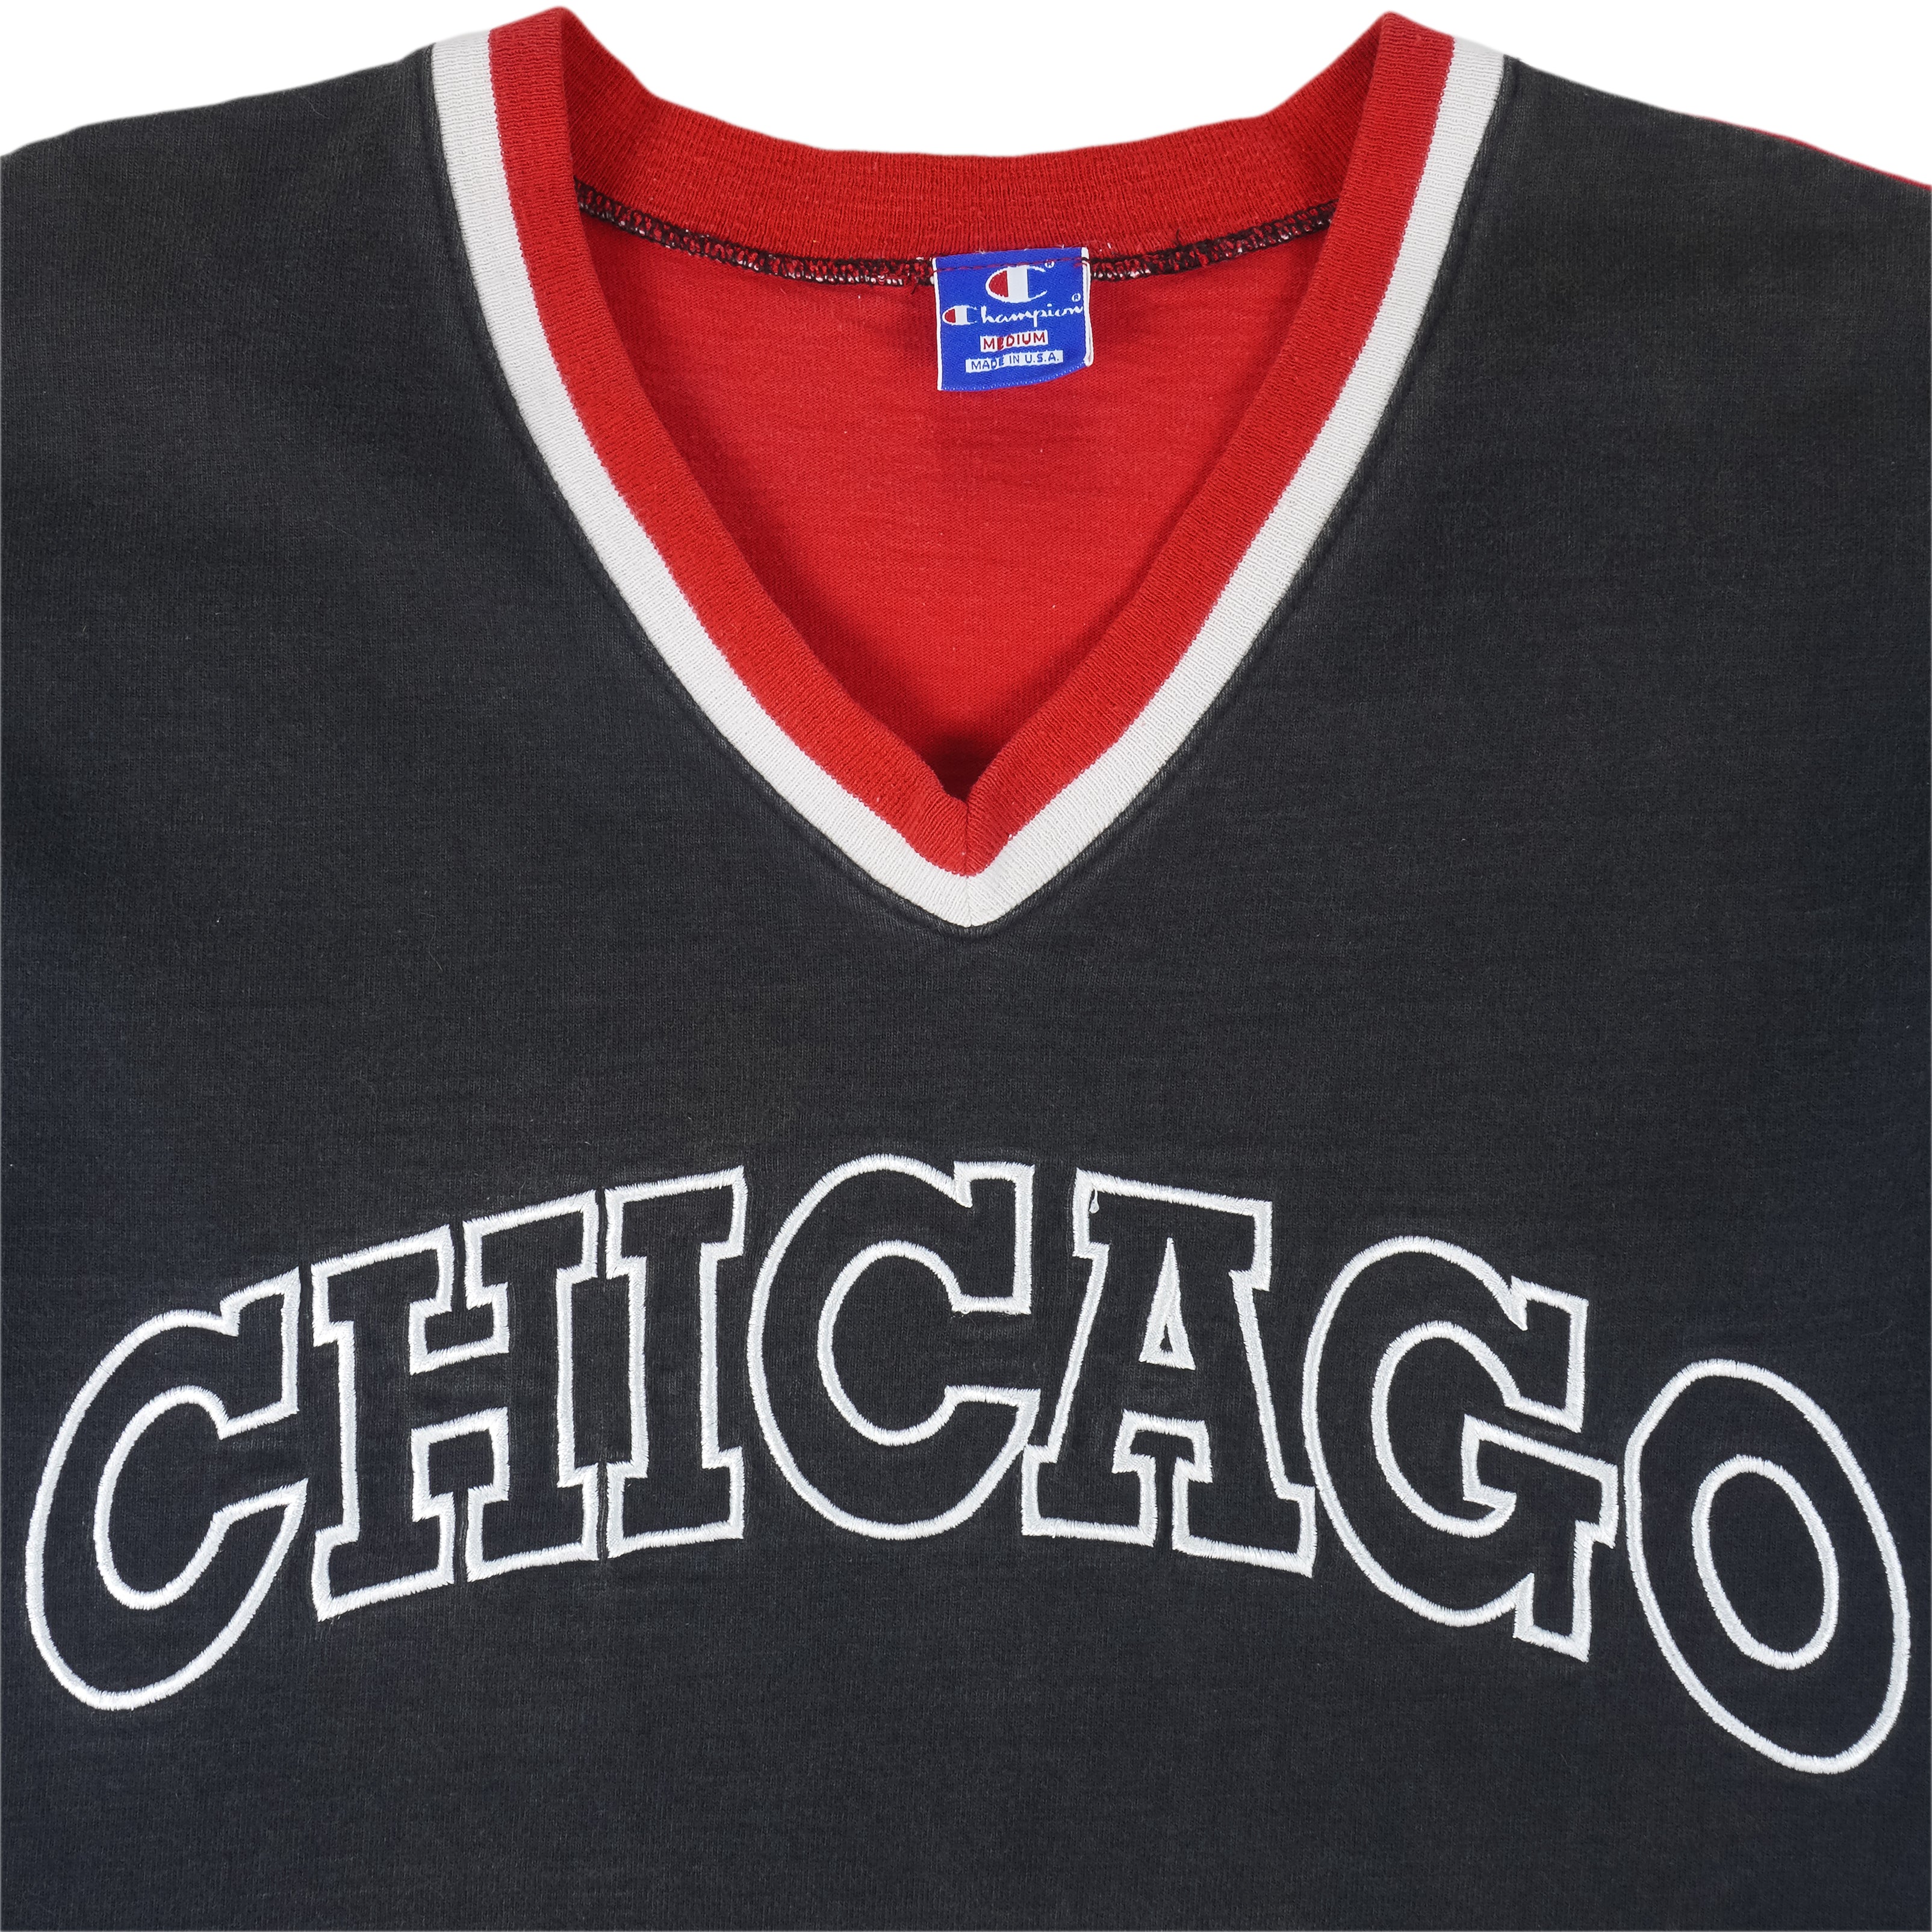 Starter Black Label + UO NBA Chicago Bulls Denim Baseball Shirt